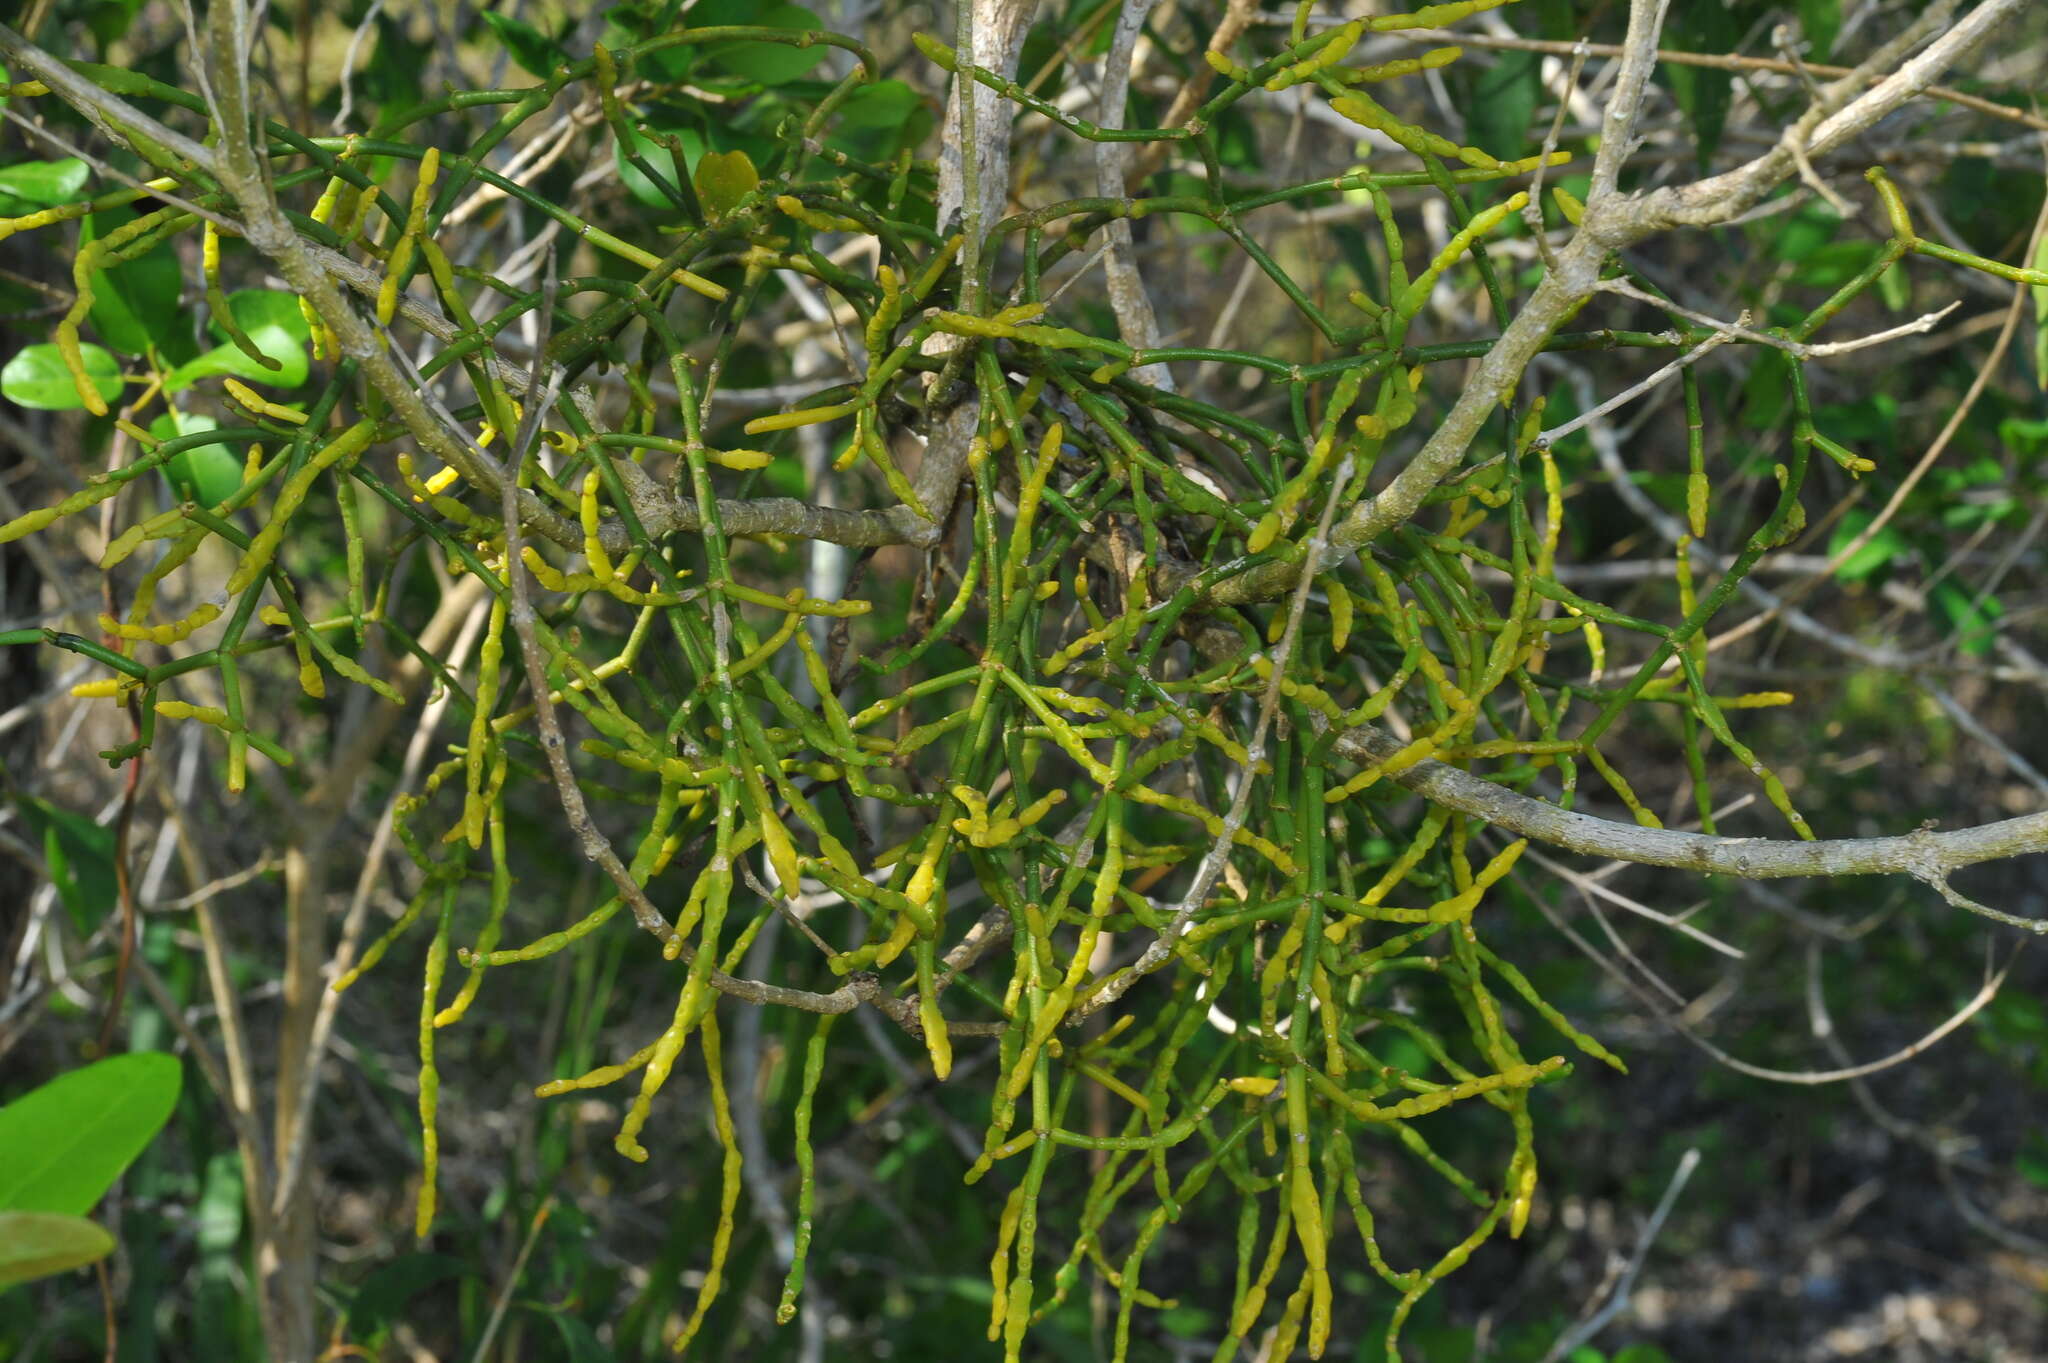 Image of Dendrophthora remotiflora Urb.